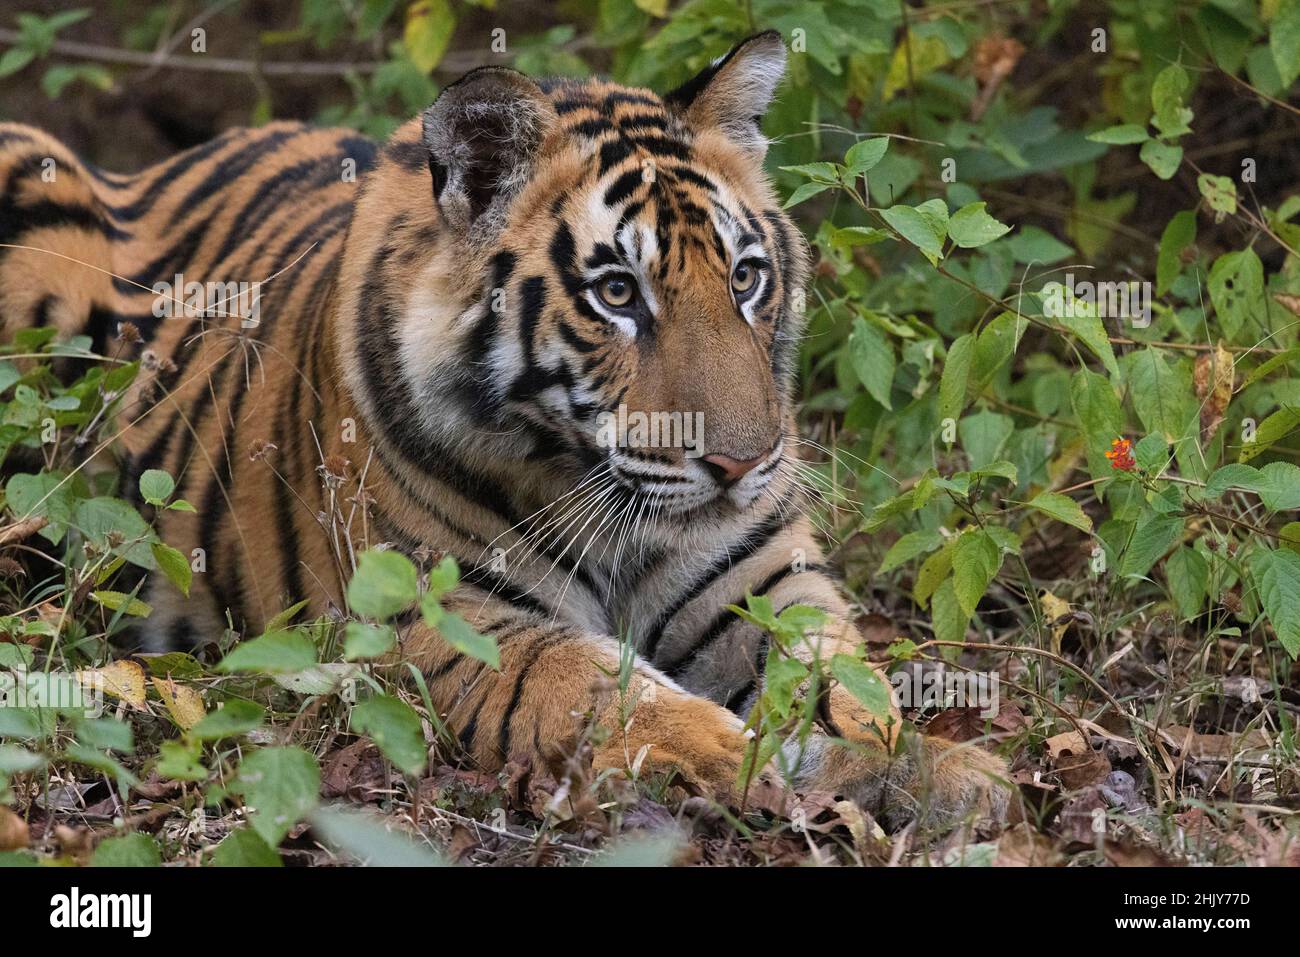 Royal Bengal Tiger, Panthera tigris, cub, Bandhavgarh Tiger Reserve, Madhya Pradesh, India Stock Photo